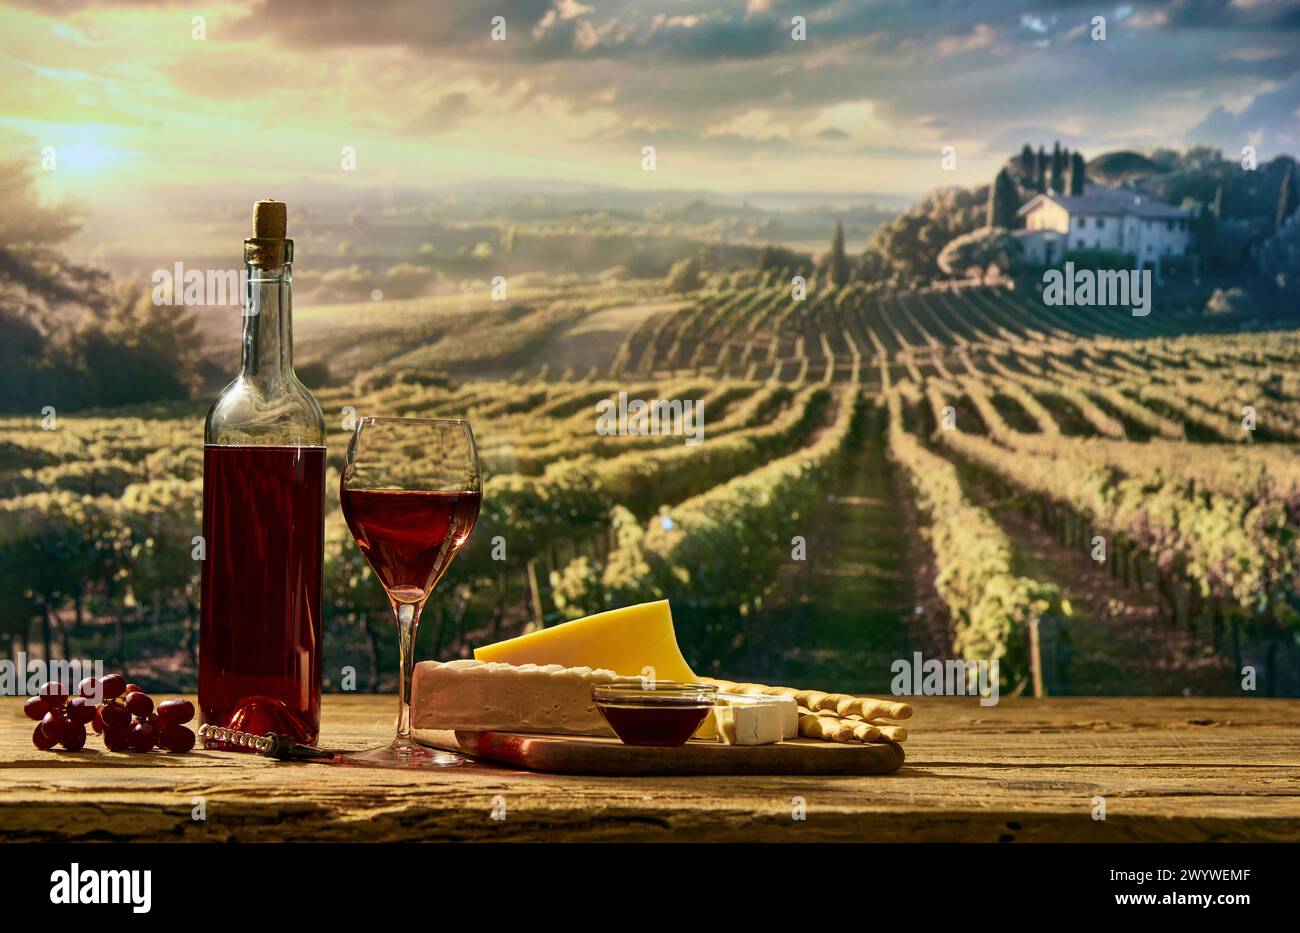 Picknick im Freien und Weindegustation. Flasche und Glas mit rotem Bio-Wein, Pastete mit Cracker und Käse für Vorspeisen mit Sommerwein Stockfoto